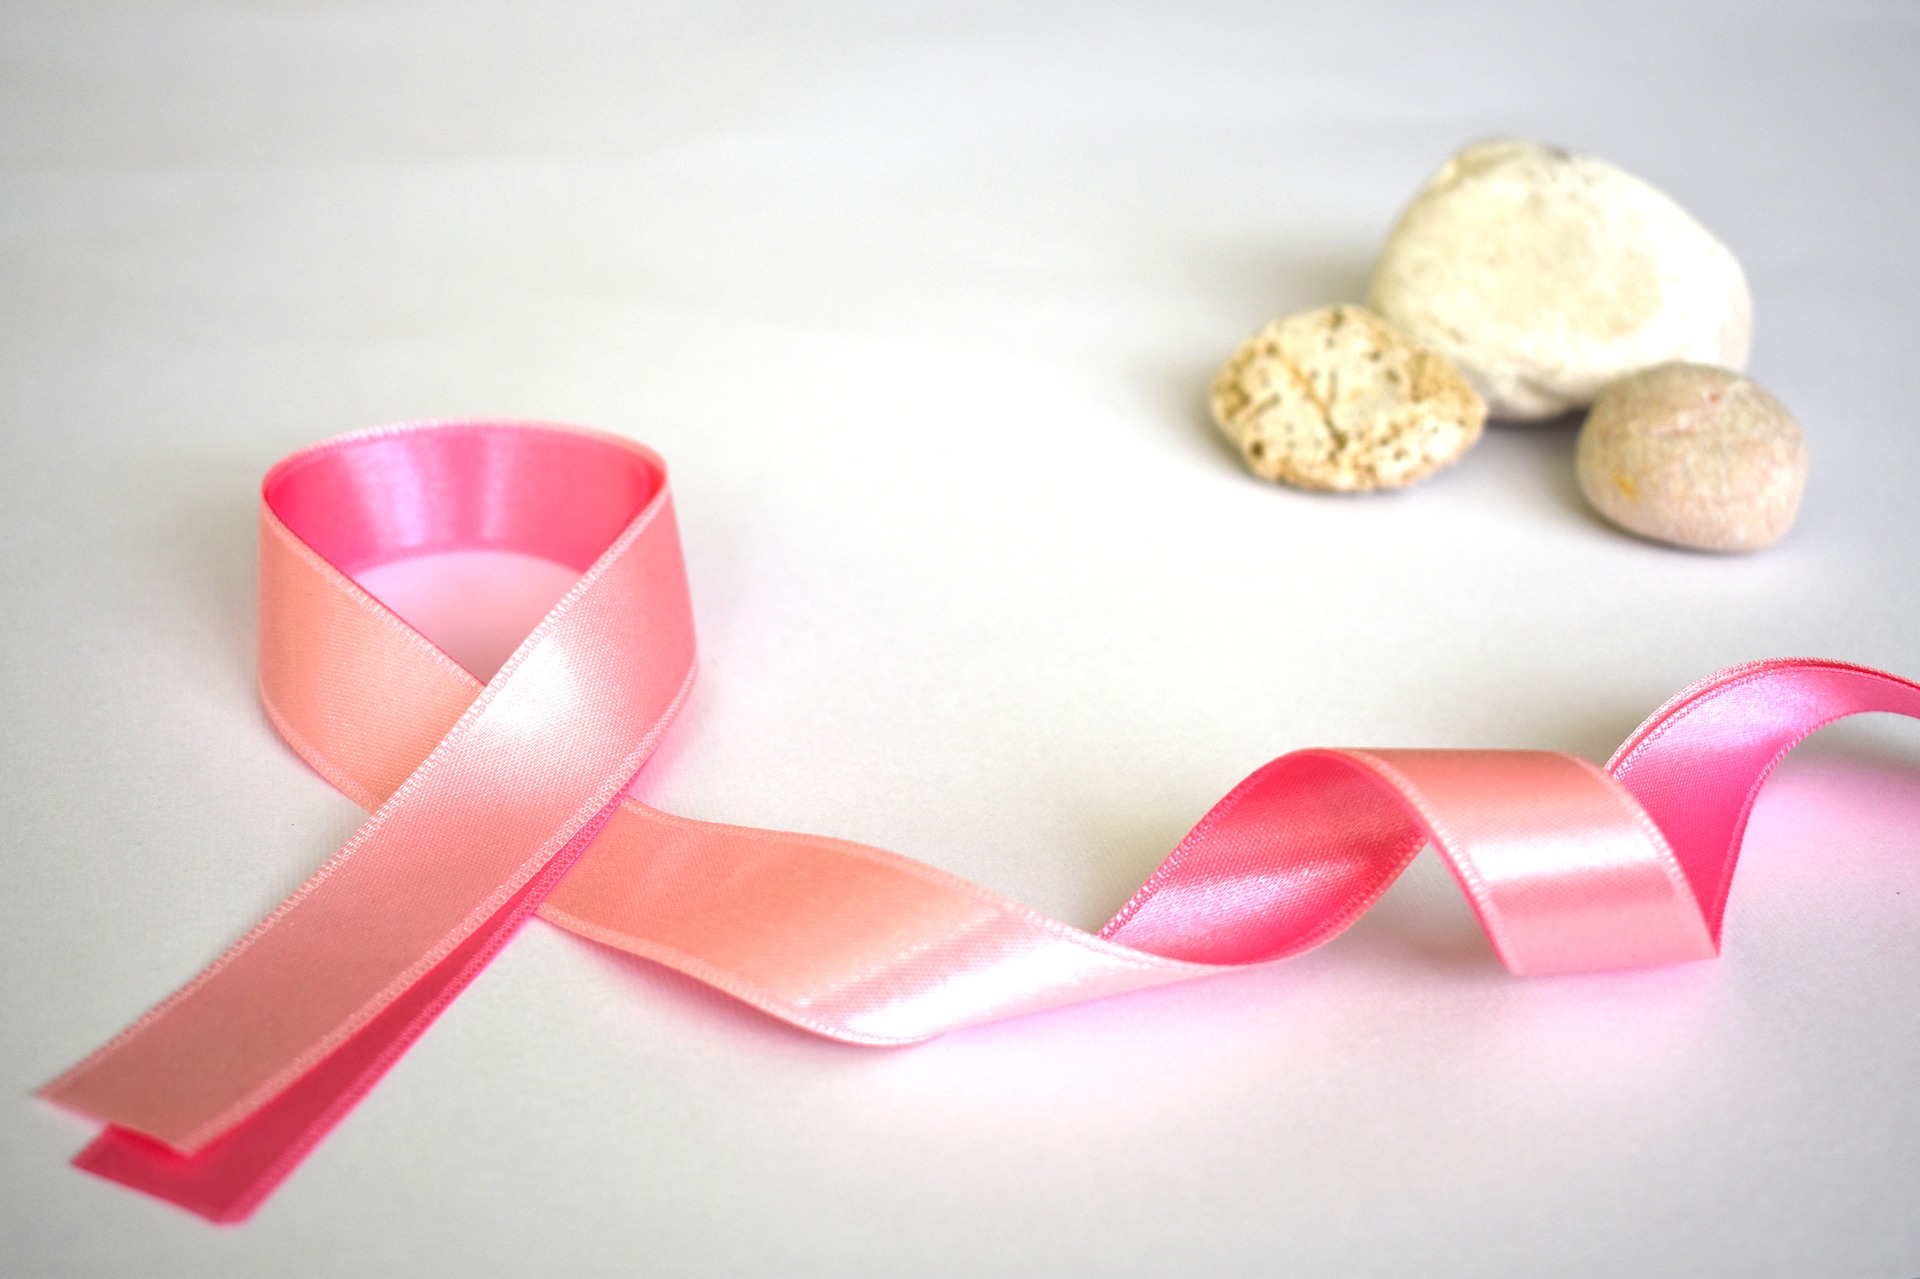 Bezpłatne badania mammograficzne w ramach programu profilaktyki raka piersi 6